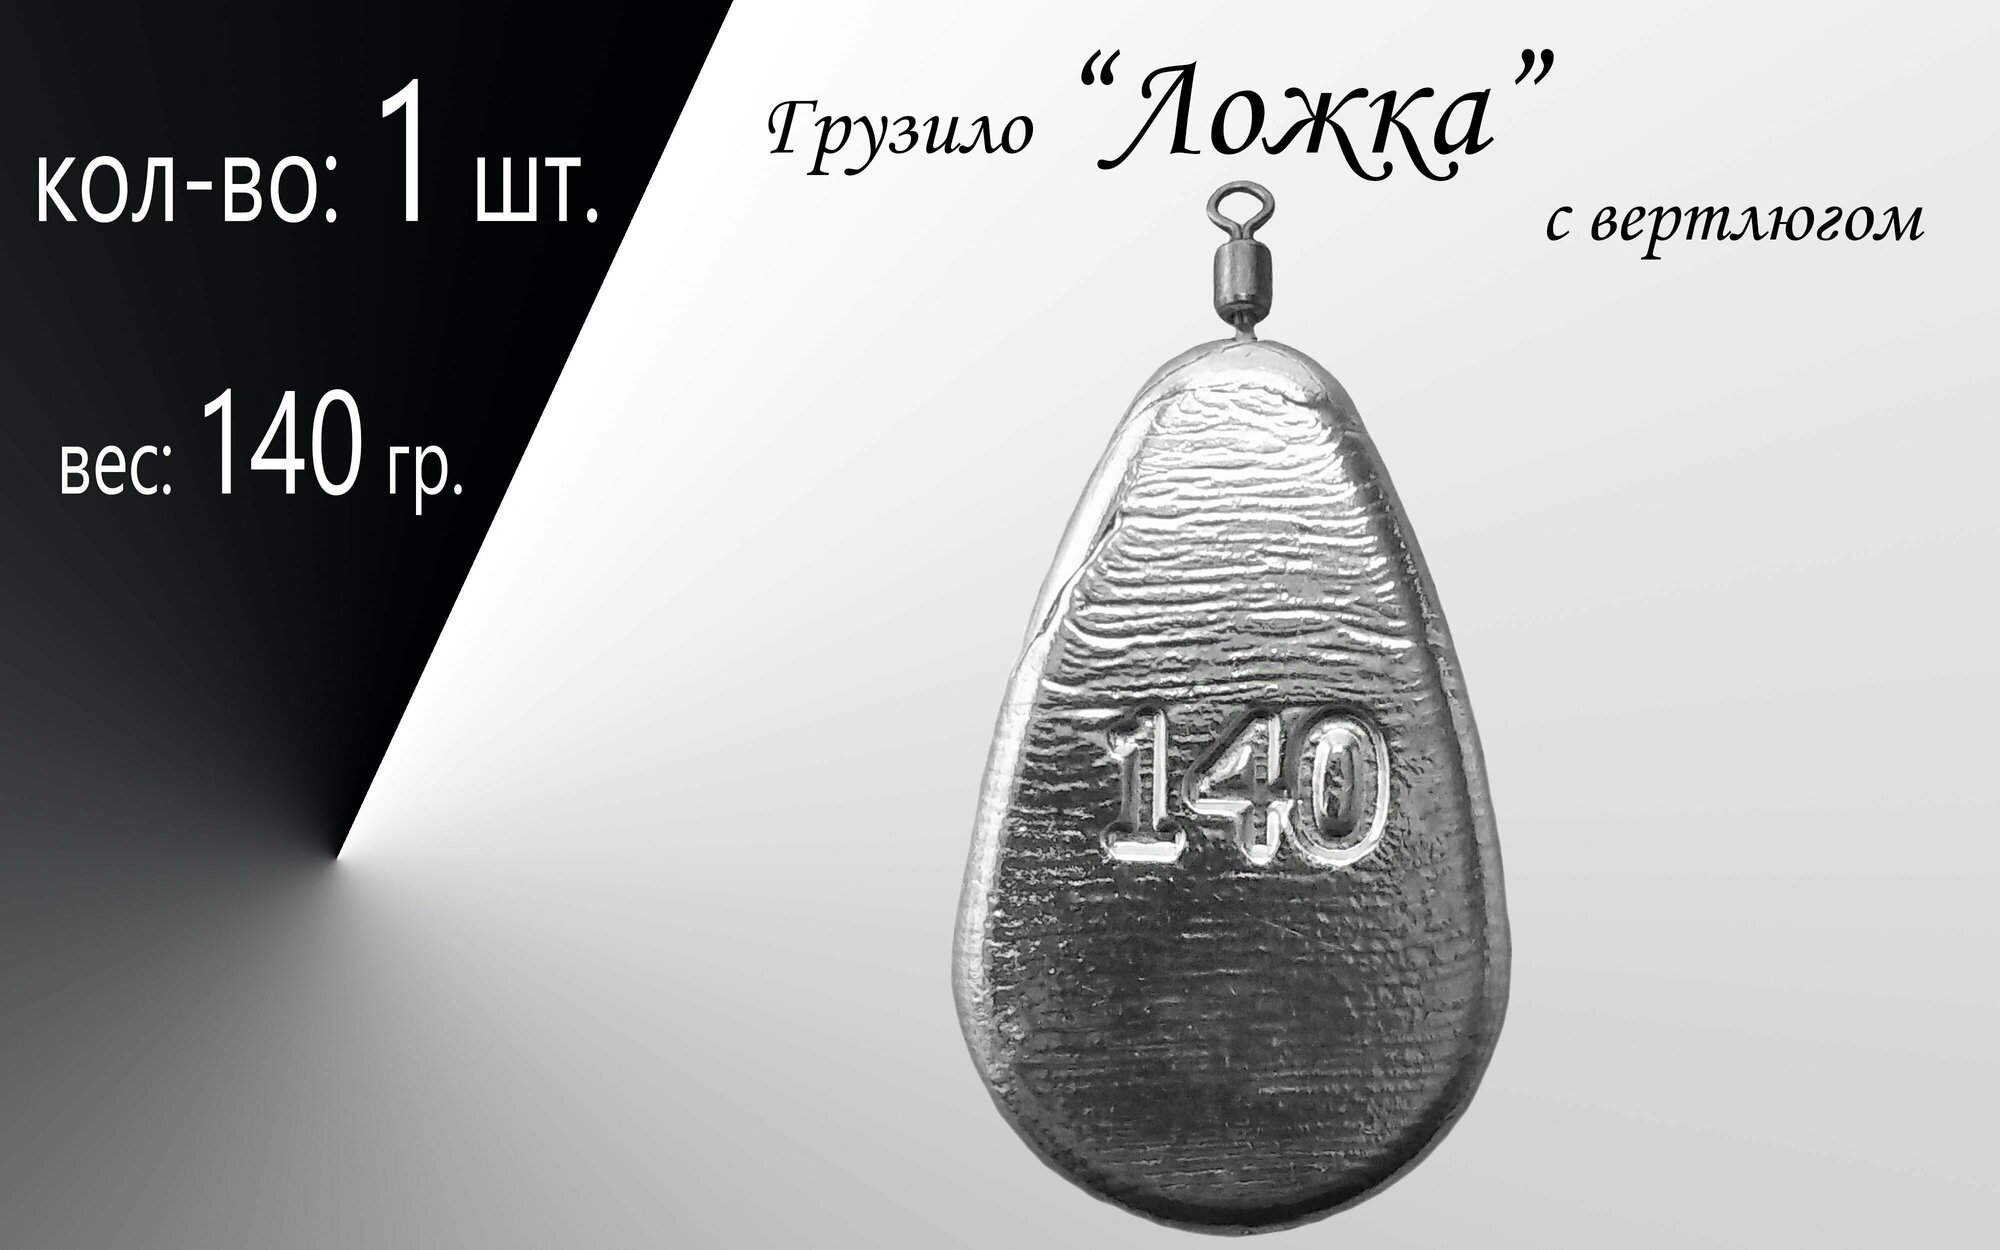 Рыболовное грузило "Ложка" с вертлюгом вес: 80 гр. в уп. 4 шт.